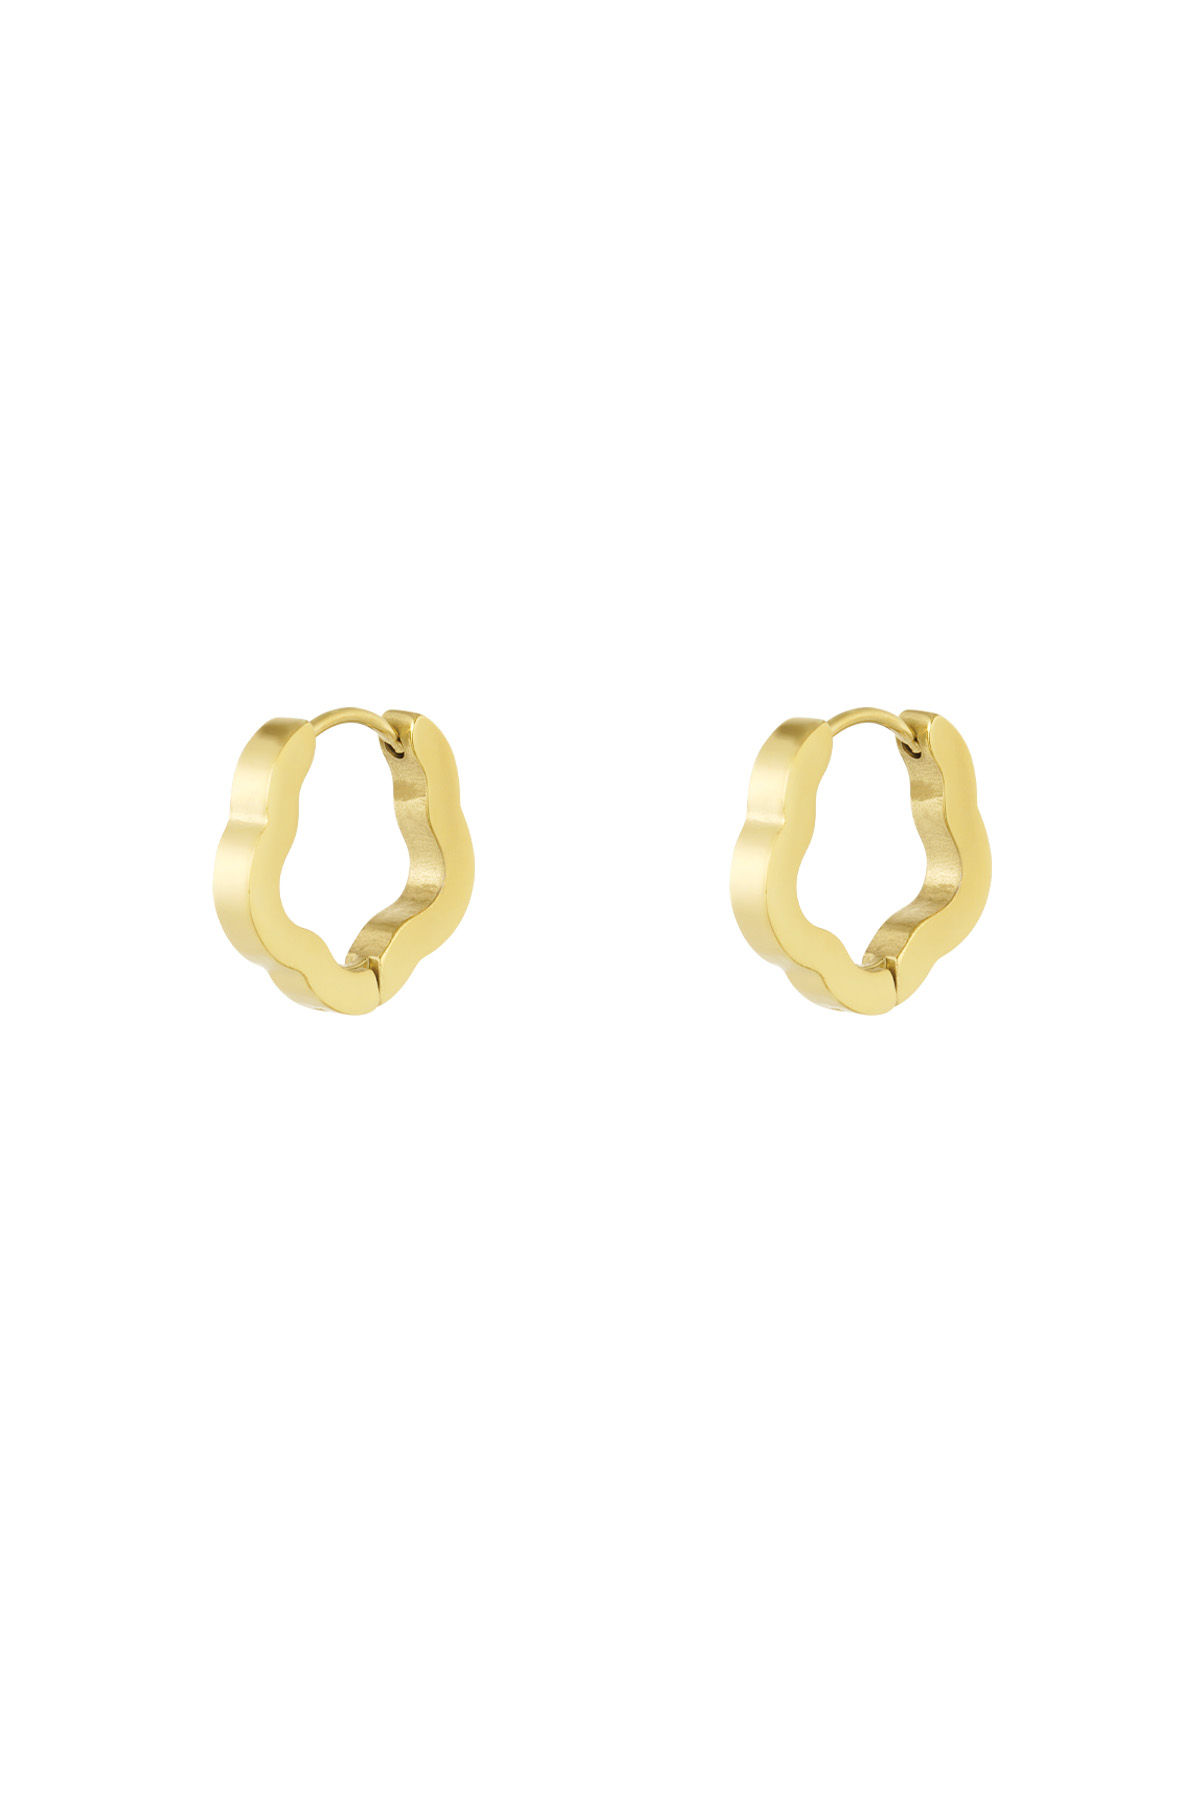 Basic flower shape earrings small - gold  h5 